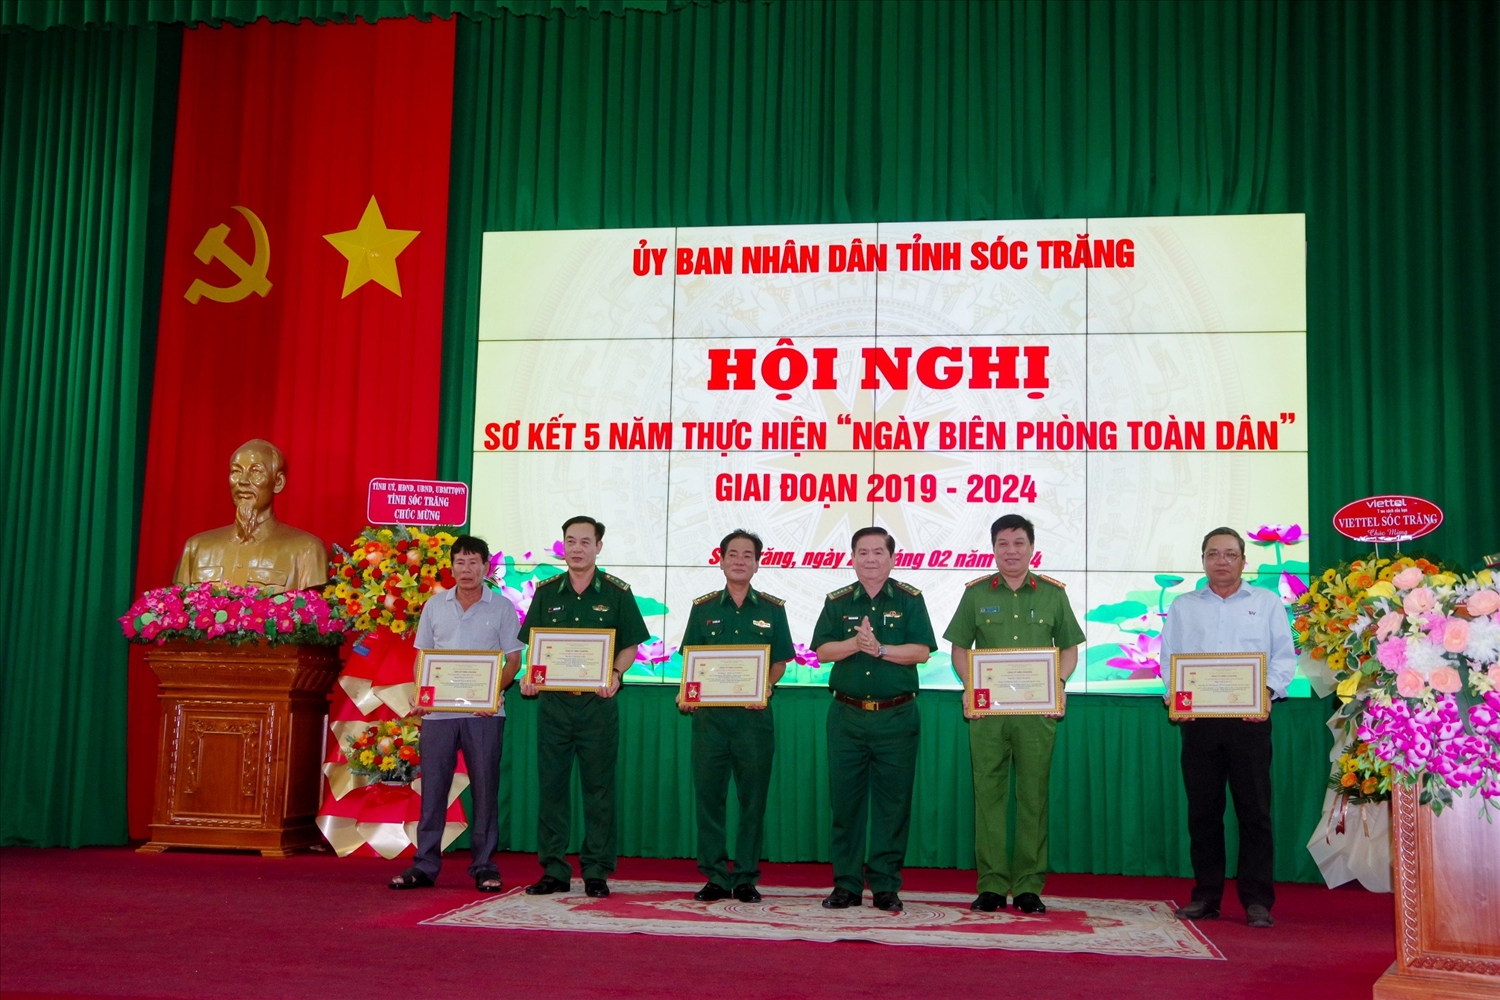  Đại tá Trịnh Kim Khâm, Chỉ huy trưởng BĐBP tỉnh Sóc Trăng thừa ủy quyền của Bộ Tư lệnh BĐBP trao Kỷ niệm chương Vì chủ quyền an ninh biên giới Tổ quốc cho các cá nhân